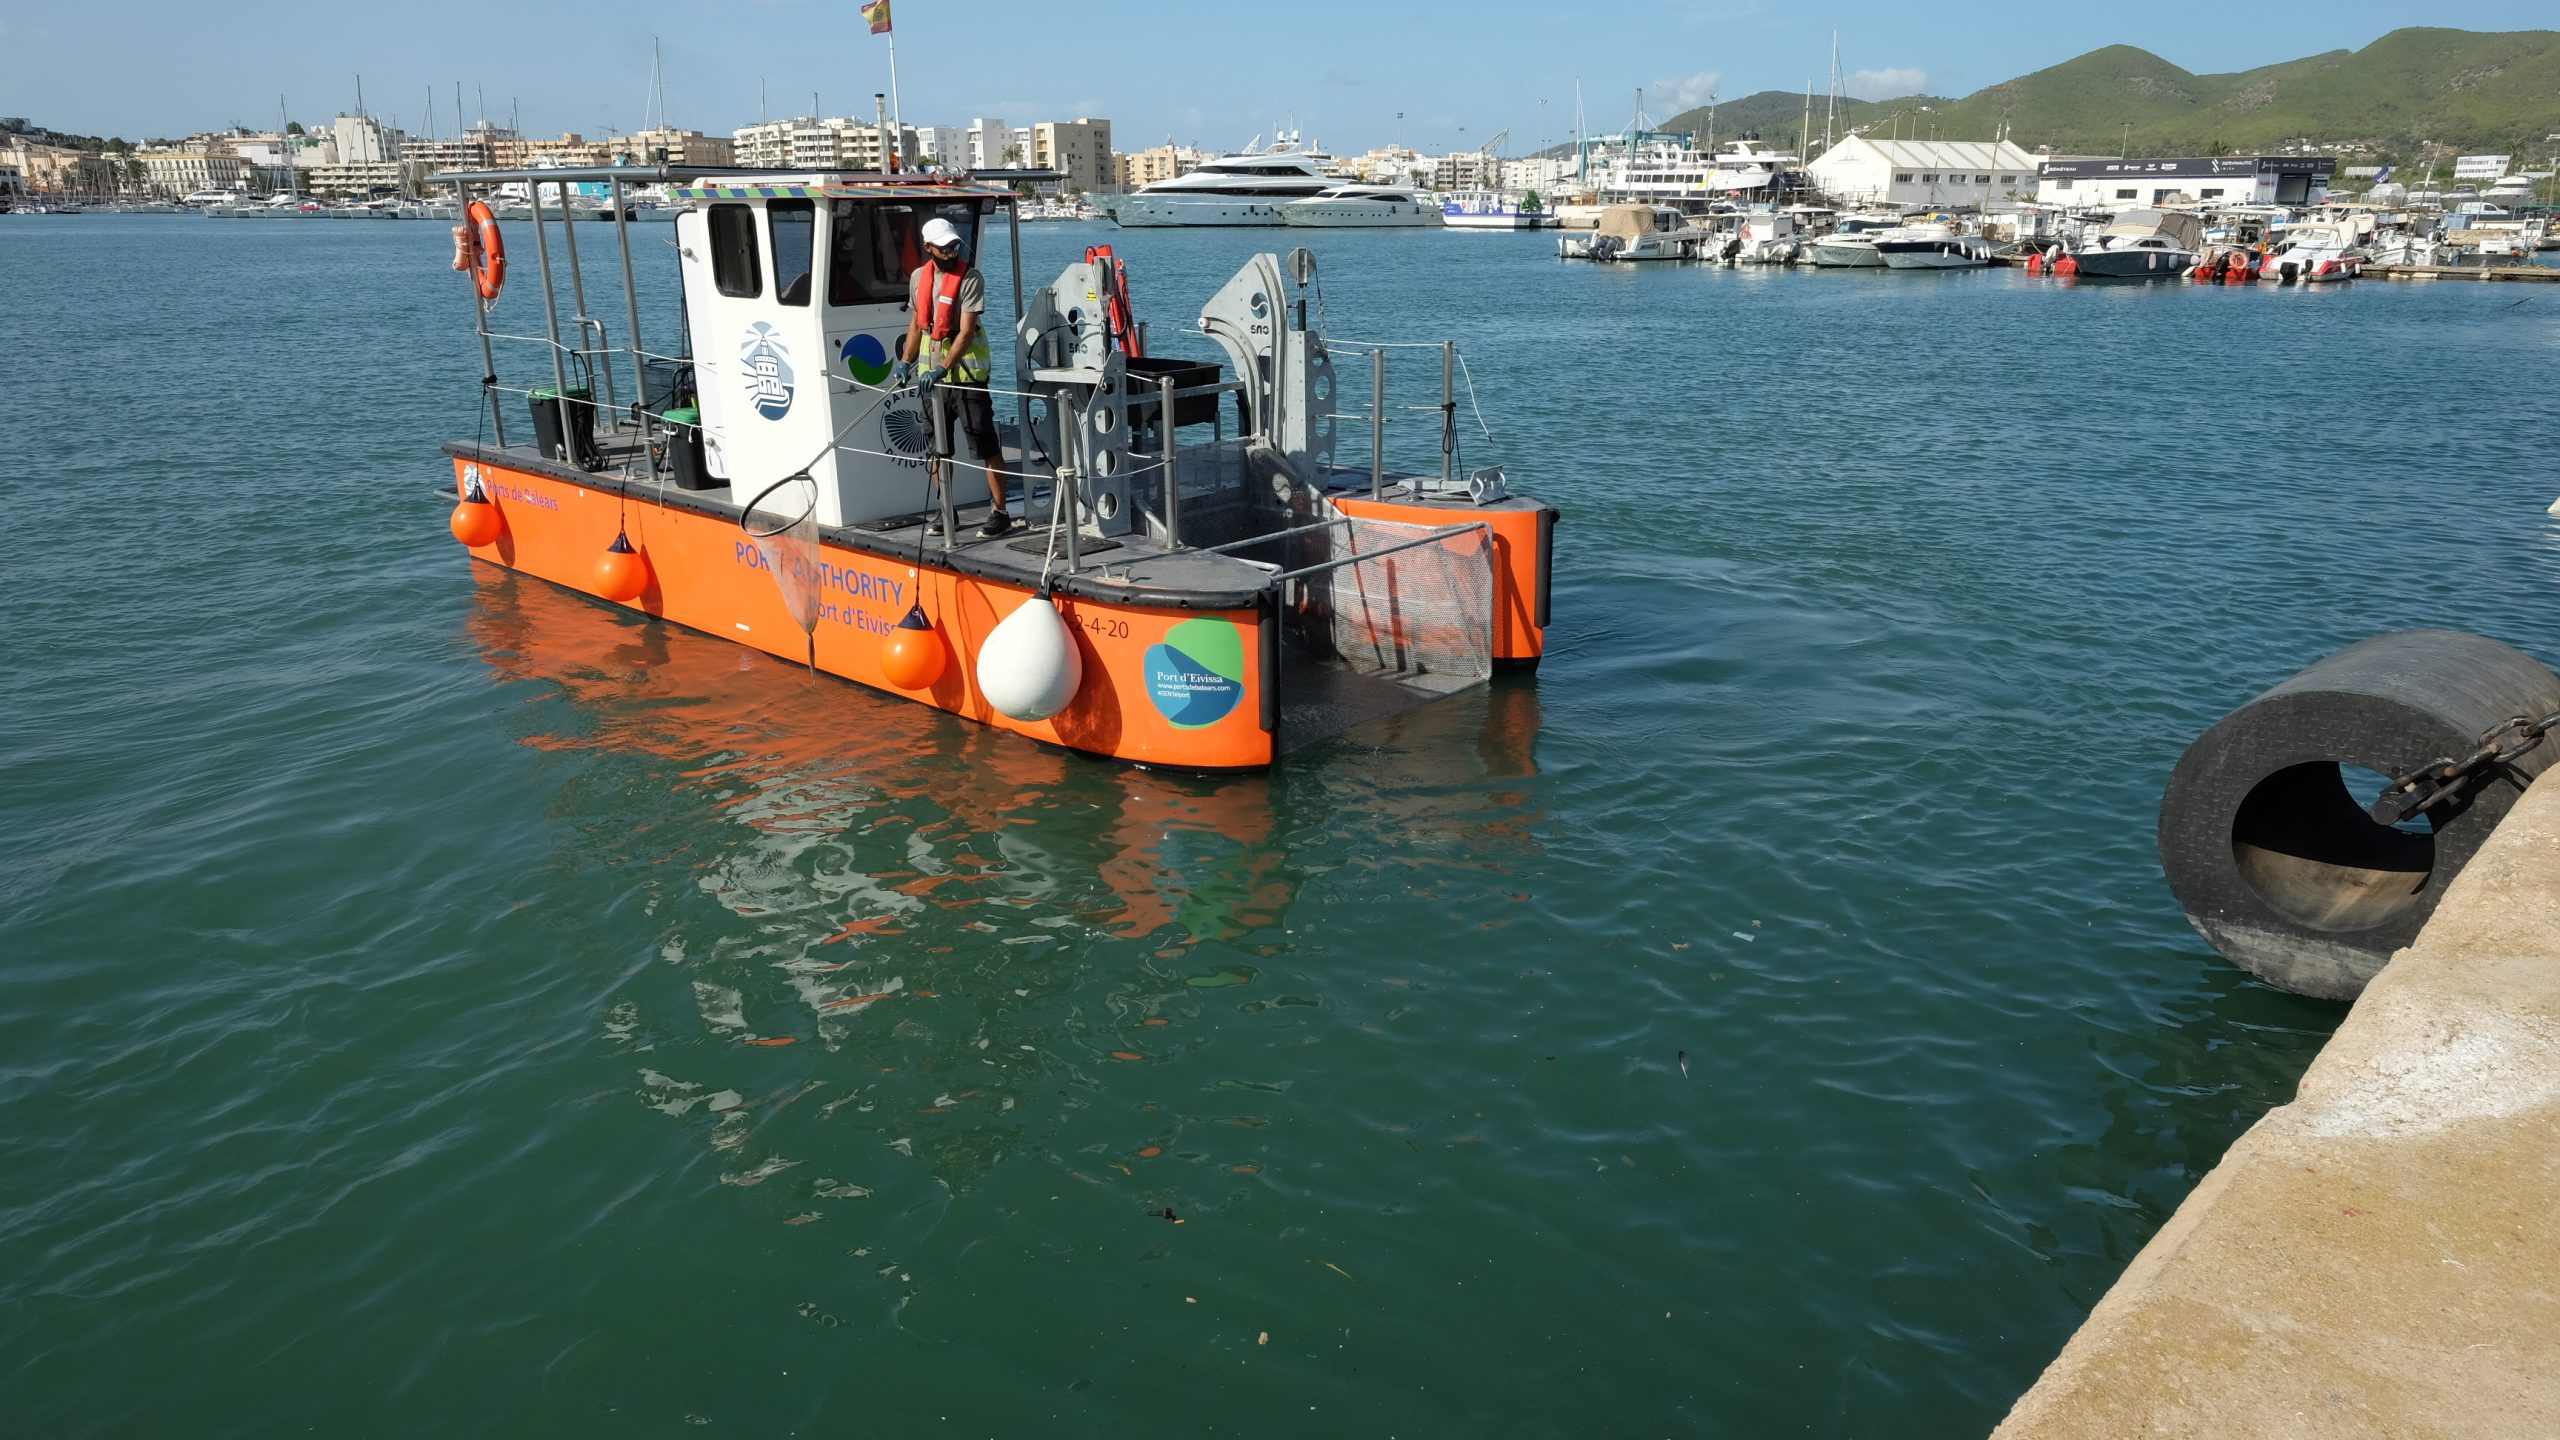 Retirades més de 8,5 tones de residus de les aigües del port d'Eivissa en els darrers 3 anys